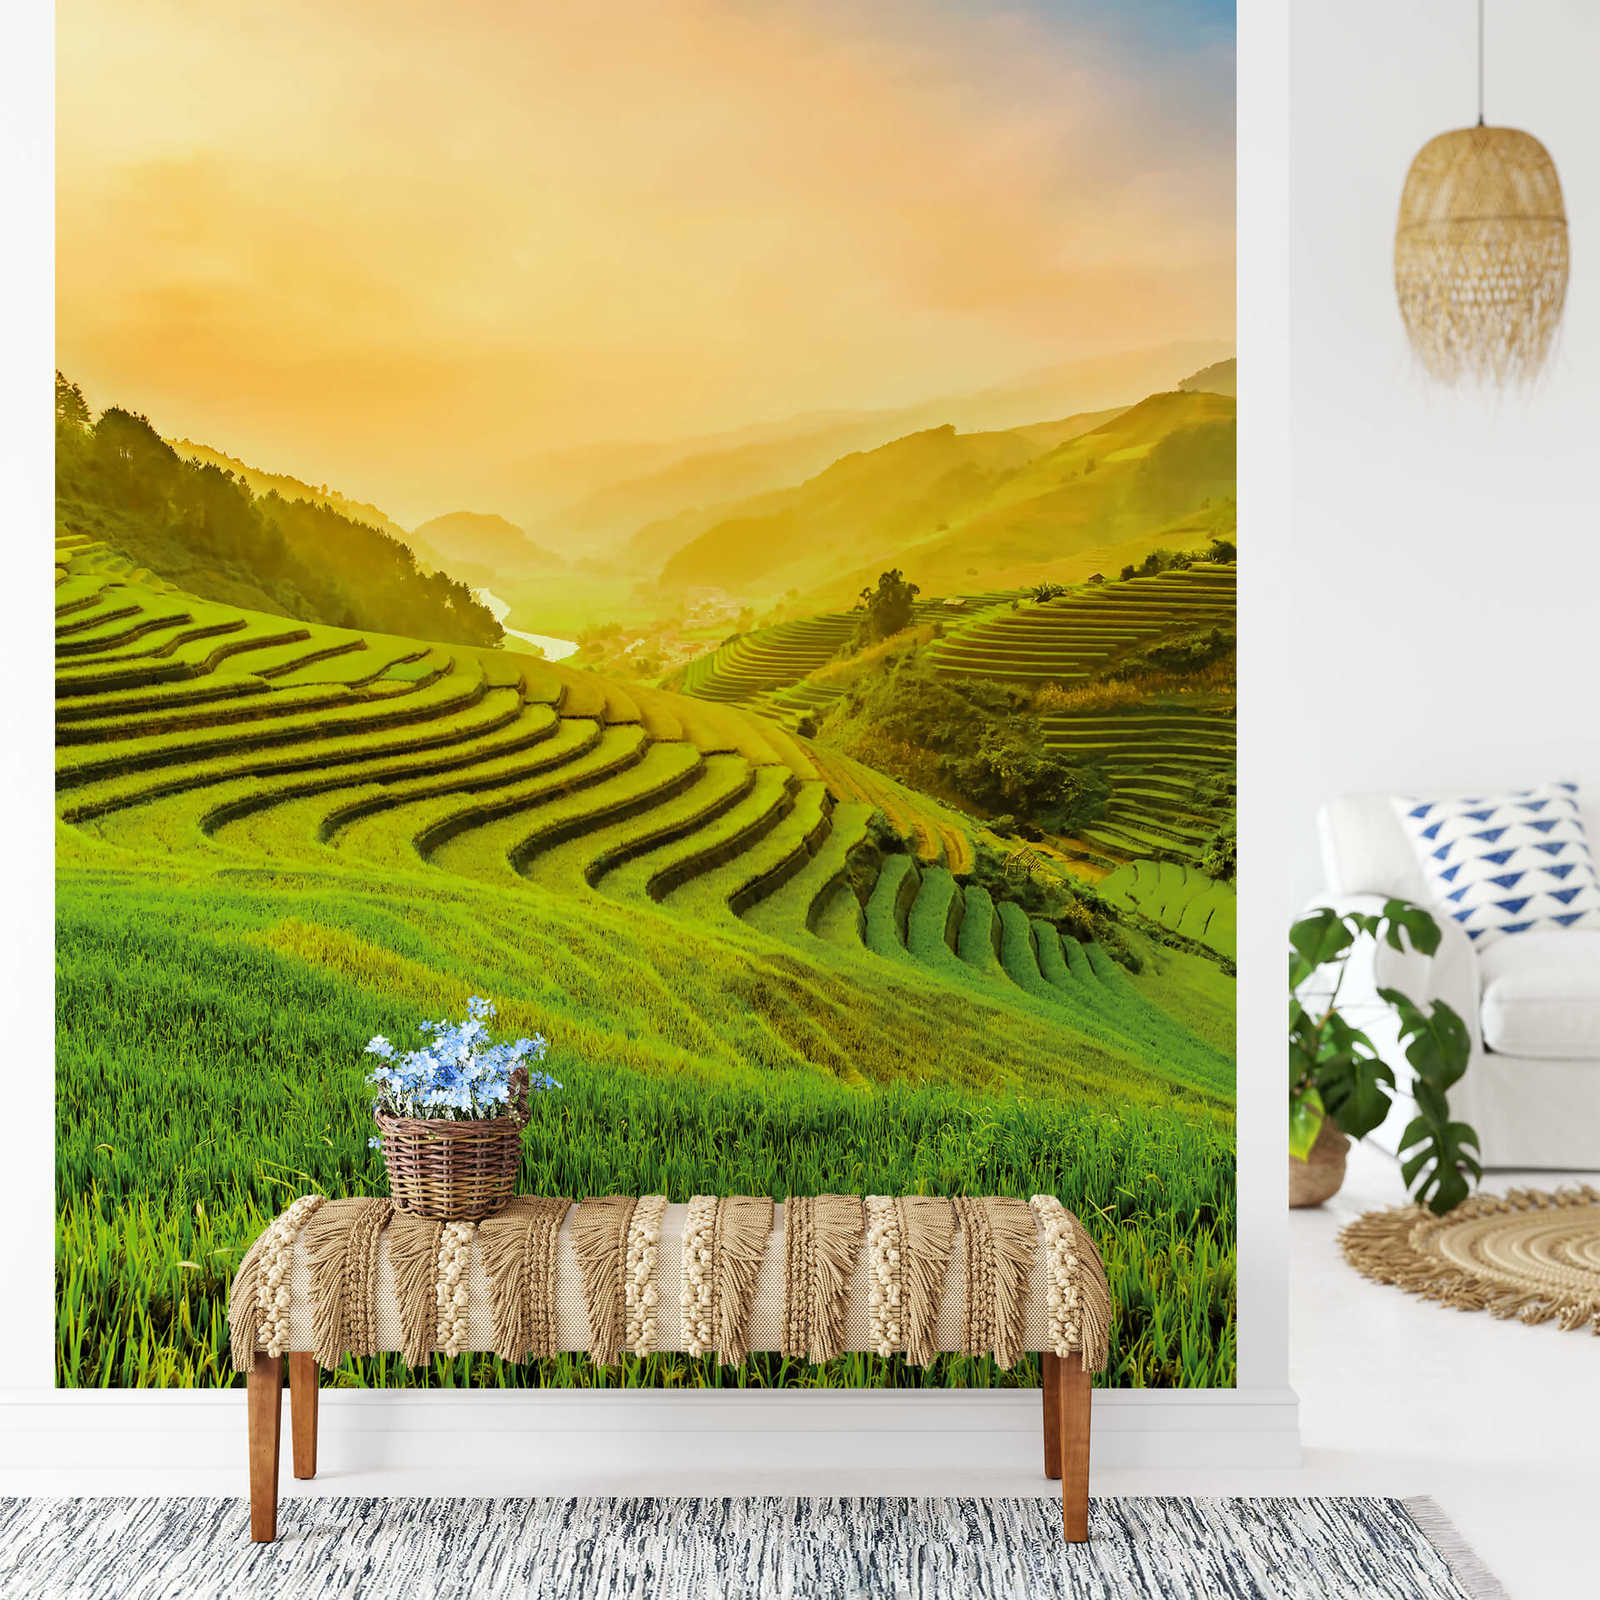             Papel pintado fotográfico de Vietnam Terrazas de arroz a la luz del sol
        